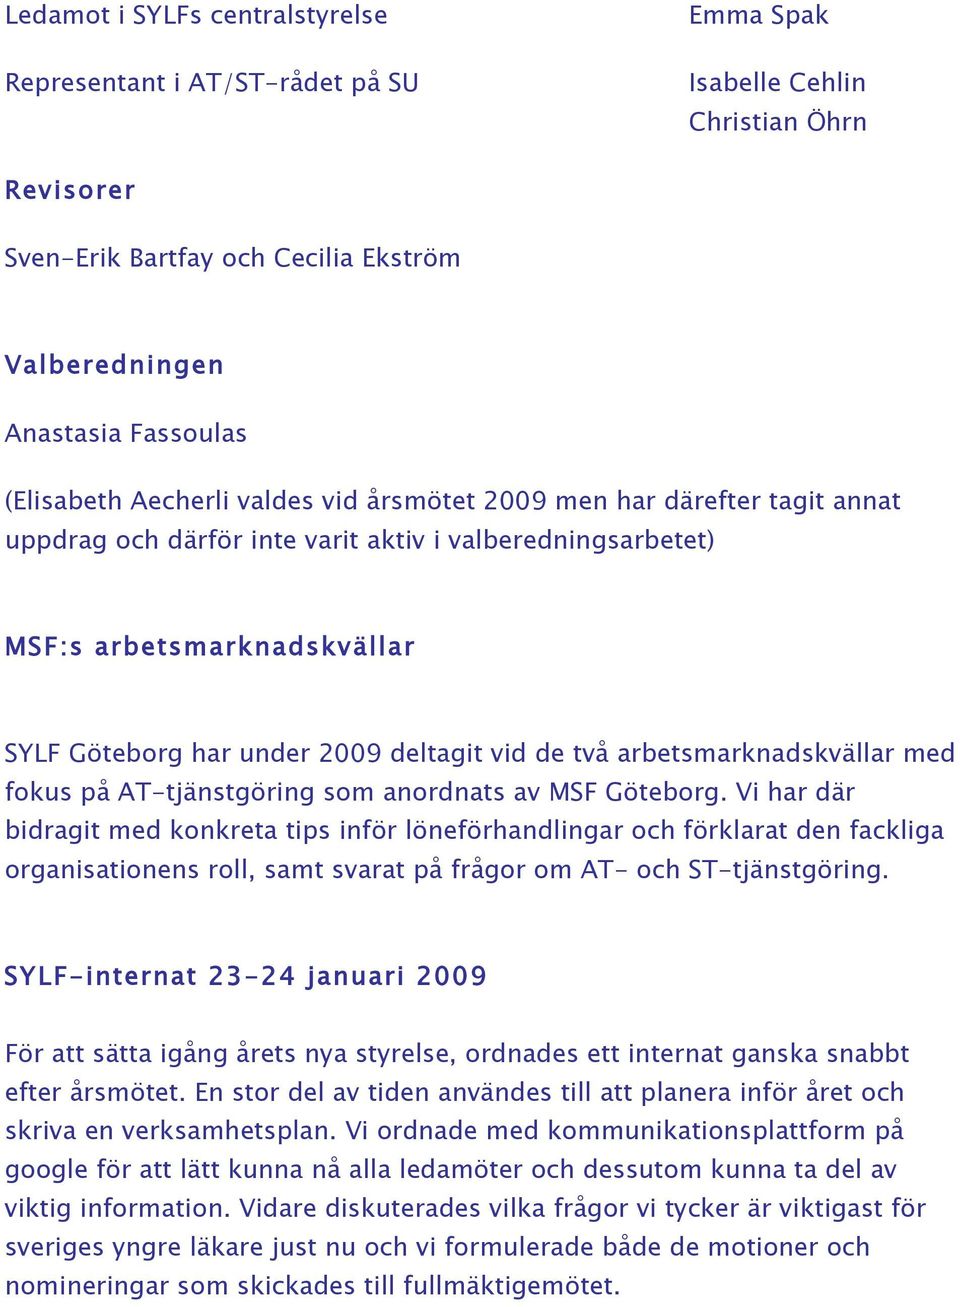 arbetsmarknadskvällar med fokus på AT-tjänstgöring som anordnats av MSF Göteborg.